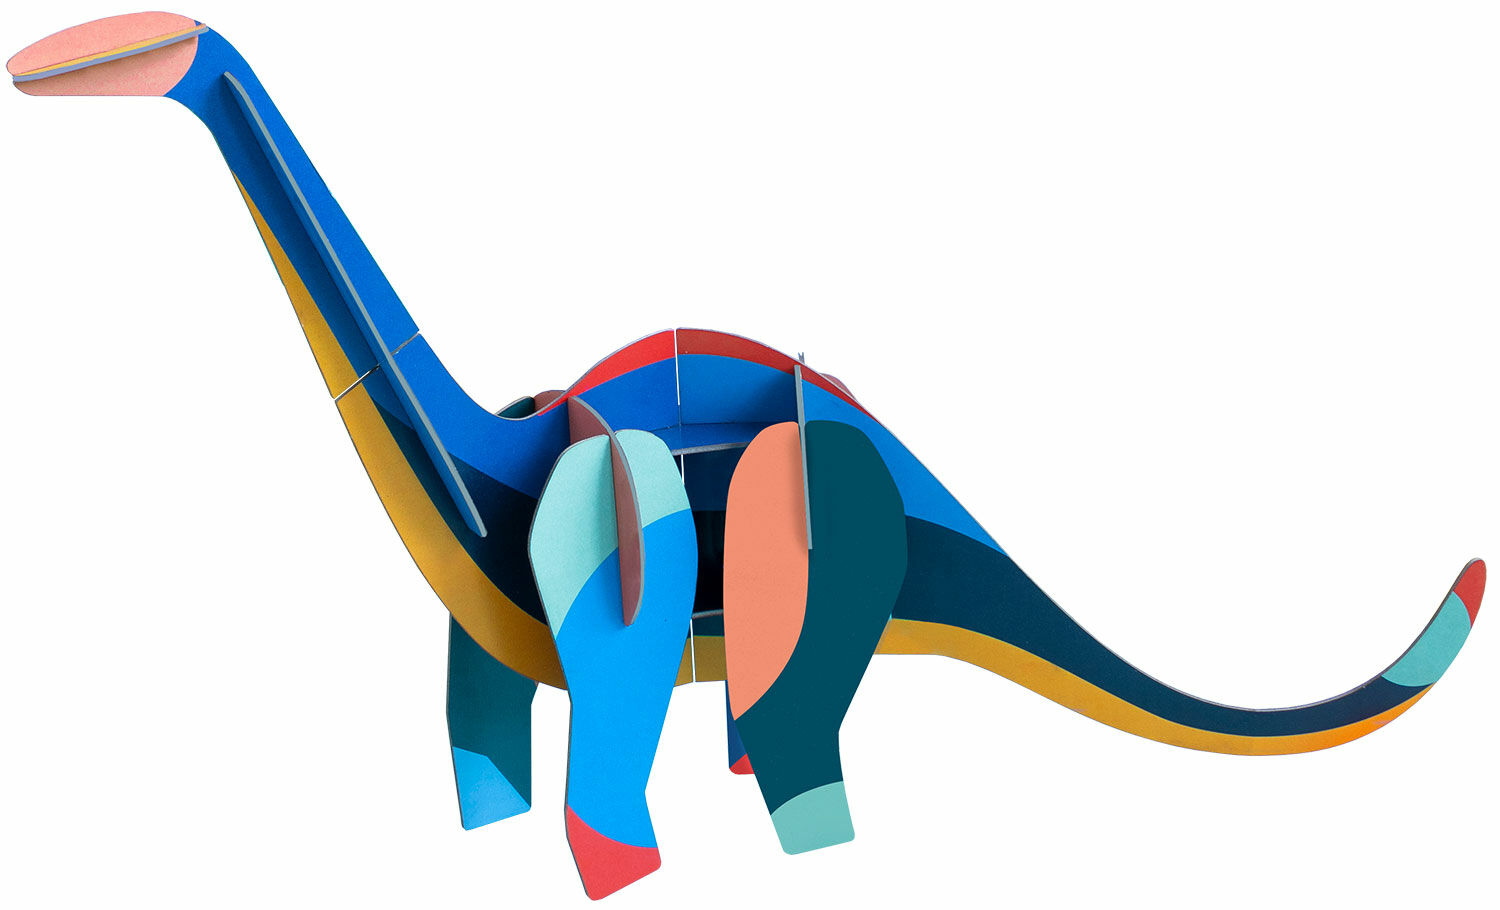 Objet 3D "Diplodocus géant" en carton recyclé, DIY von studio ROOF